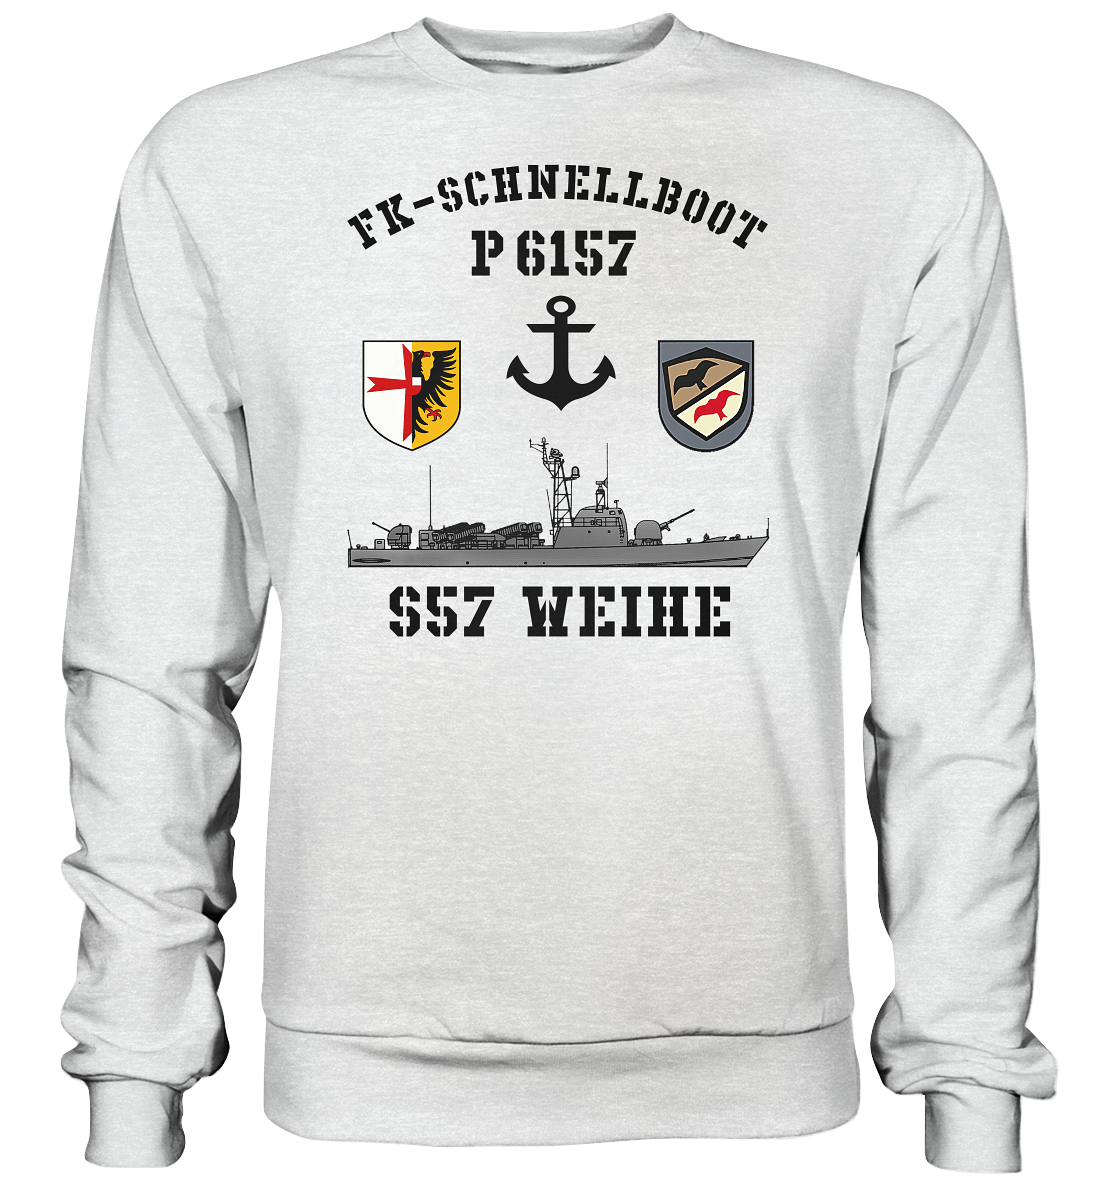 FK-Schnellboot P6157 WEIHE Anker - Premium Sweatshirt